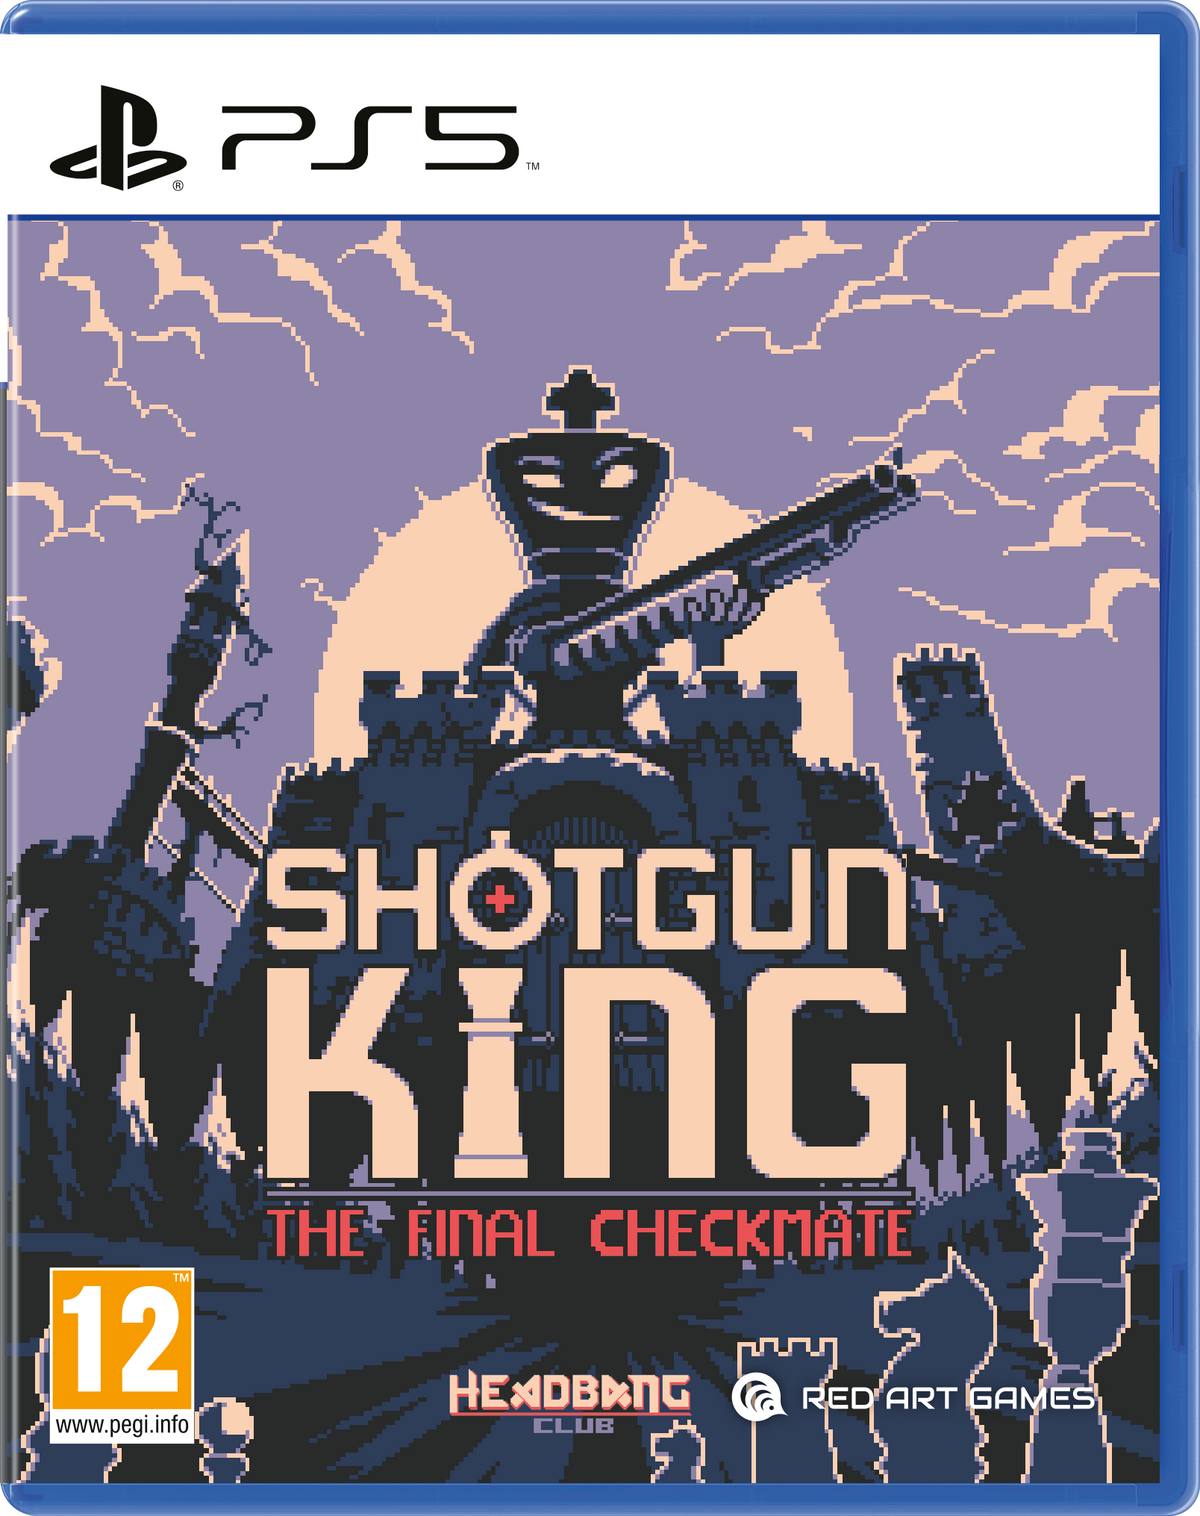 Comprar Shotgun King: The Final Checkmate Steam